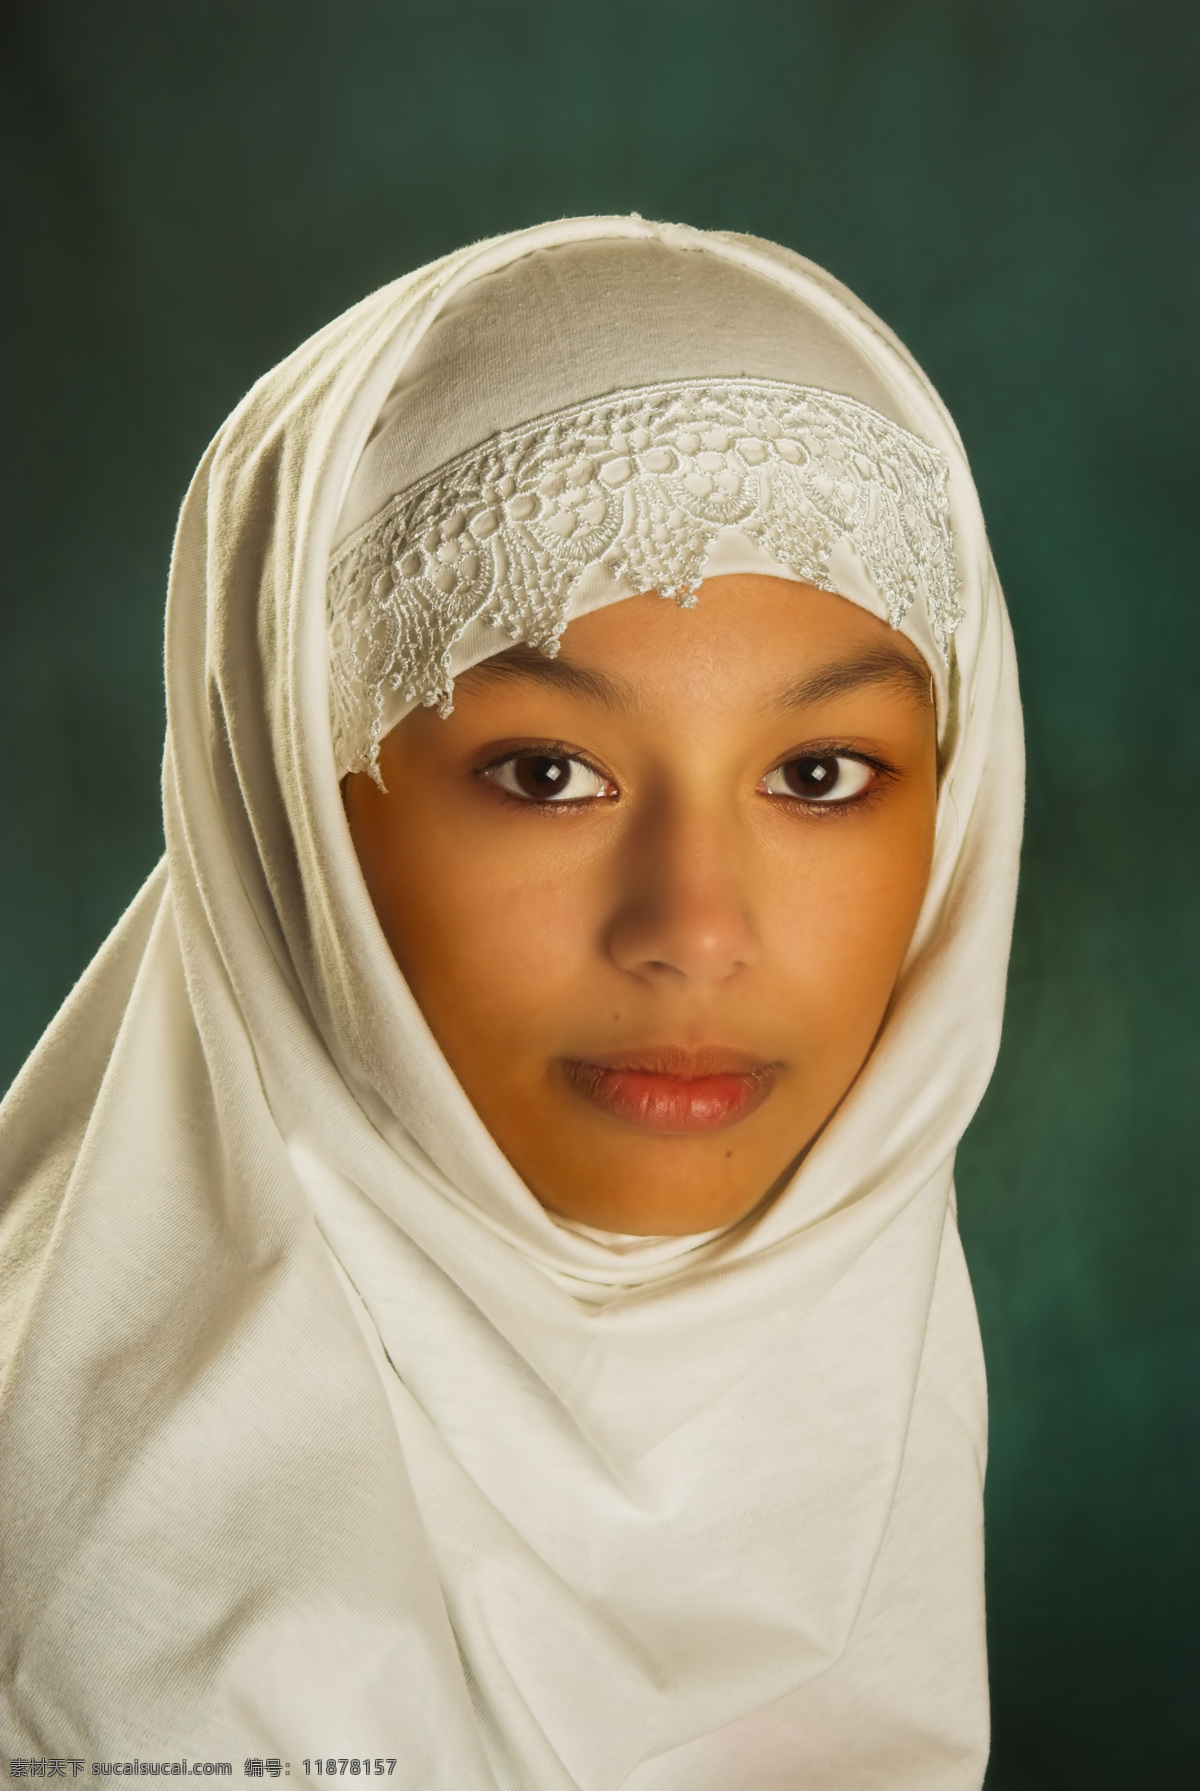 白色 面纱 宗教 女性 女人 美女 成年女性 白色面纱 头巾 信仰 高清图片 美女图片 人物图片